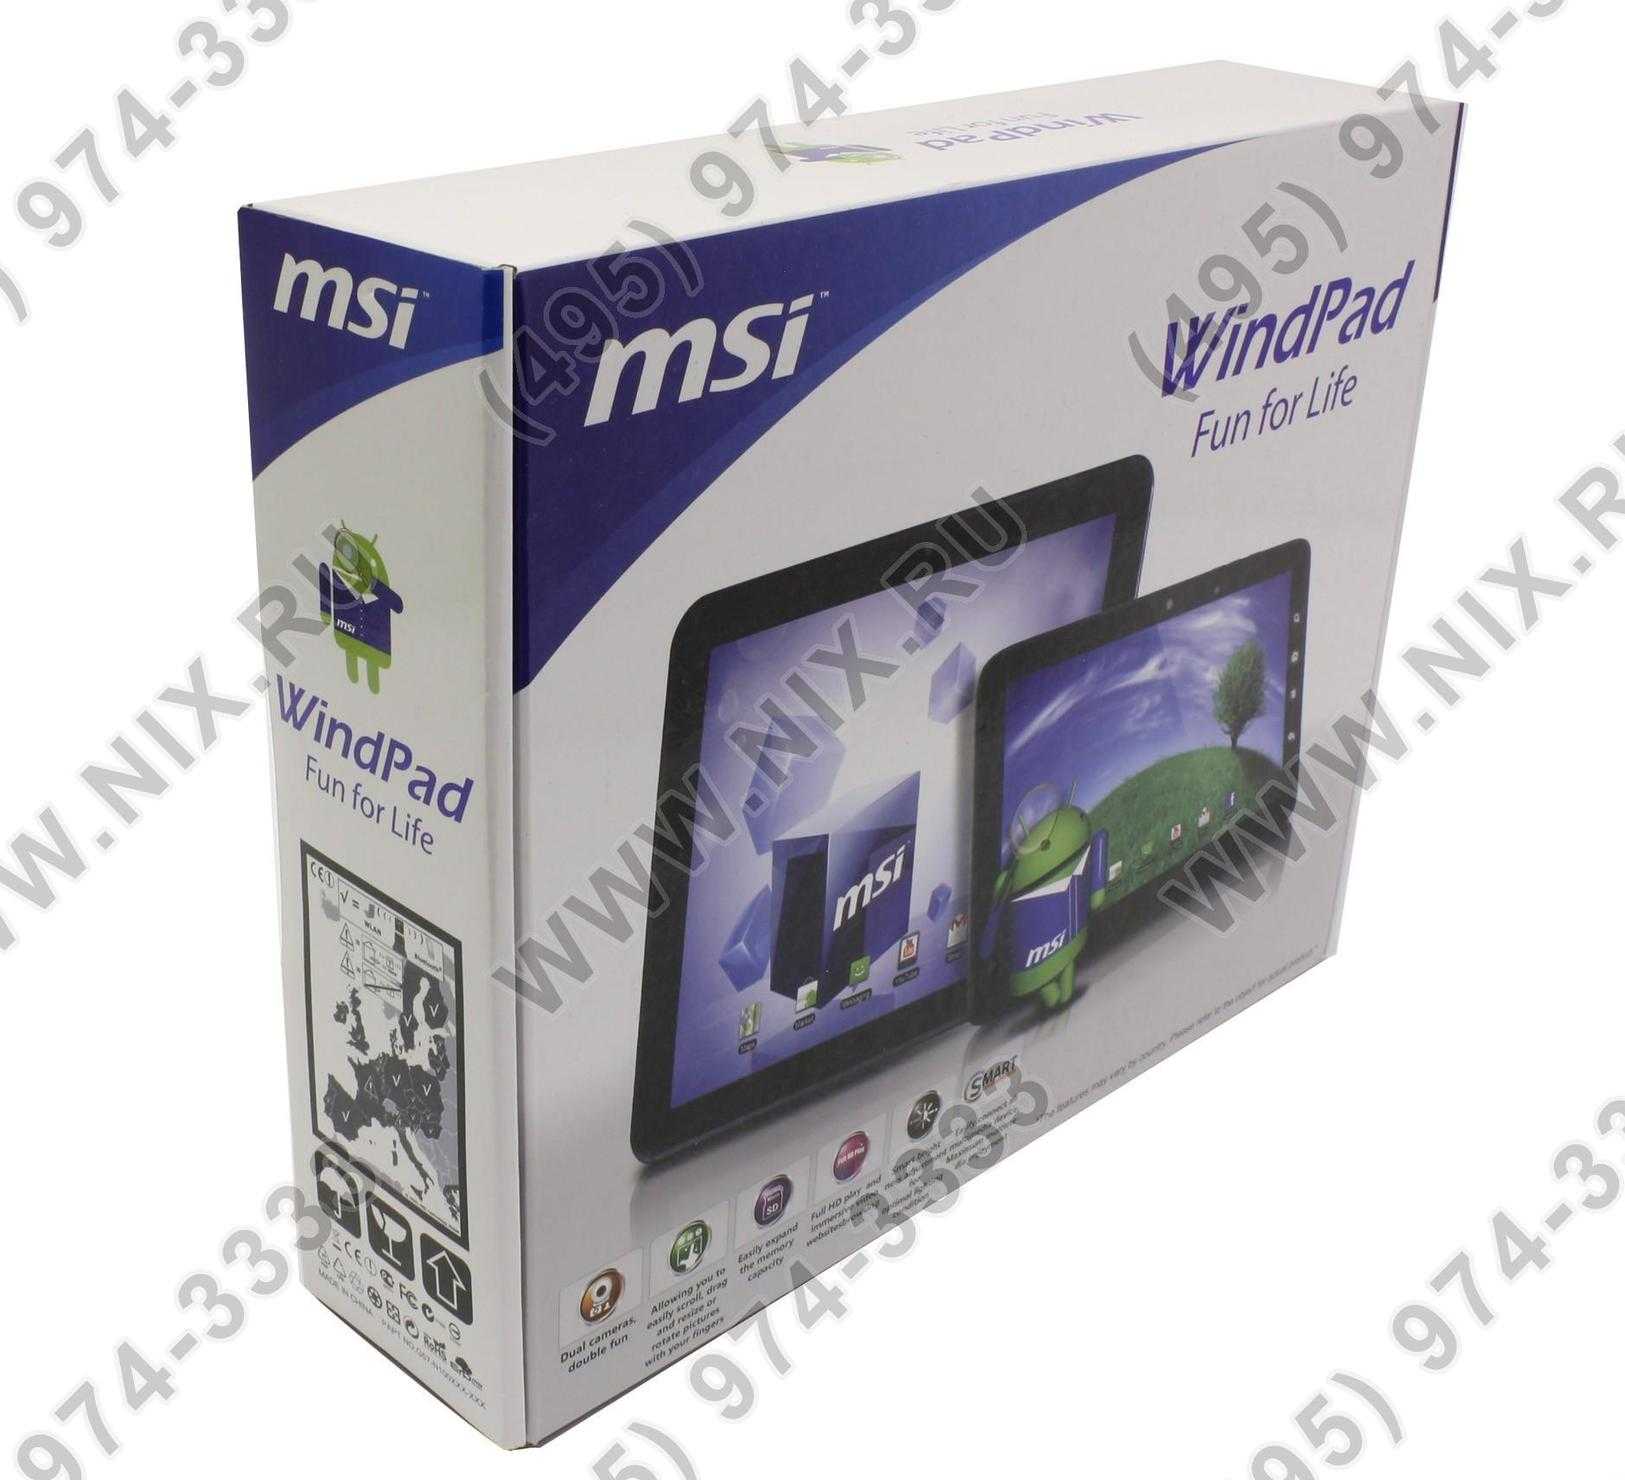 Планшет msi windpad enjoy 71 — купить, цена и характеристики, отзывы